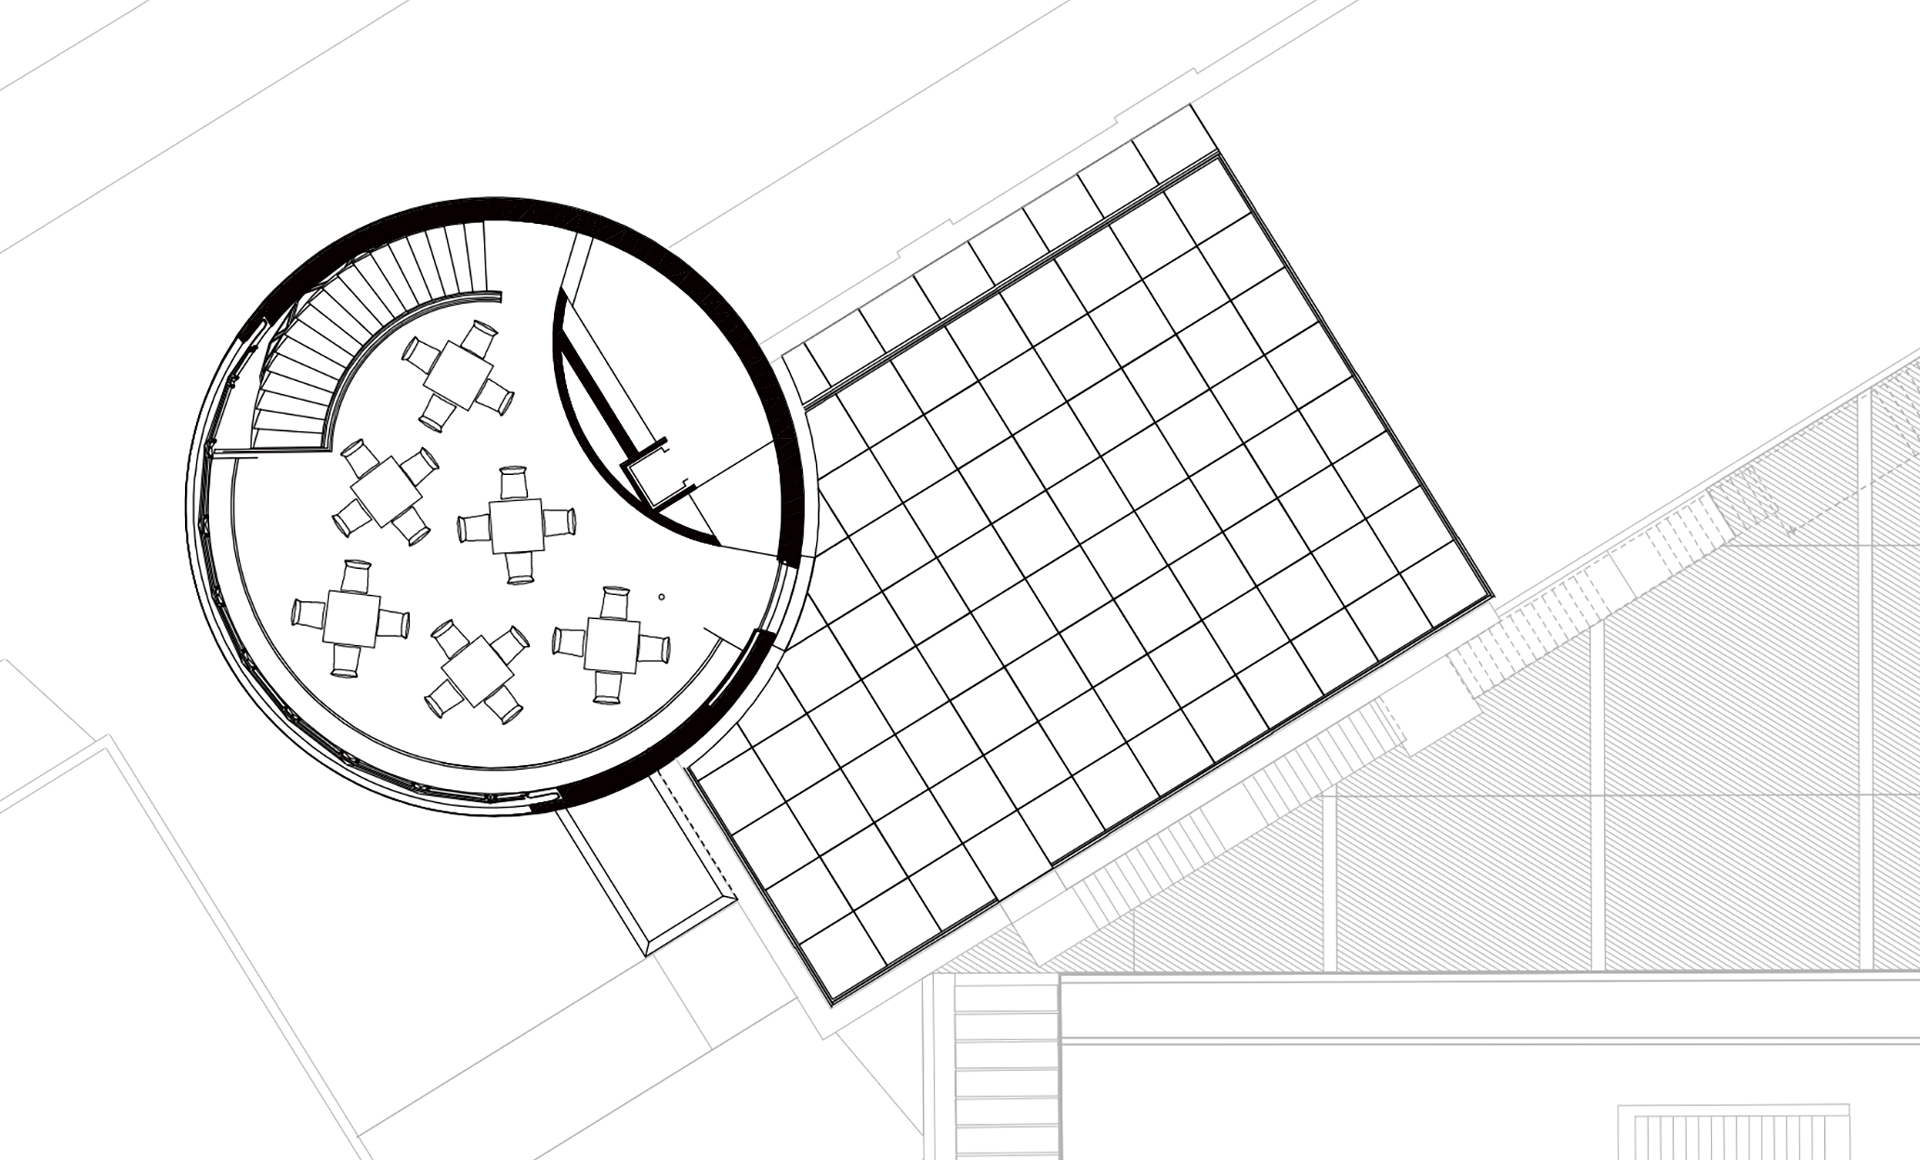 Ylätasolta on yhteys kattoterassille. Piirros: Kern Architektur GmbH